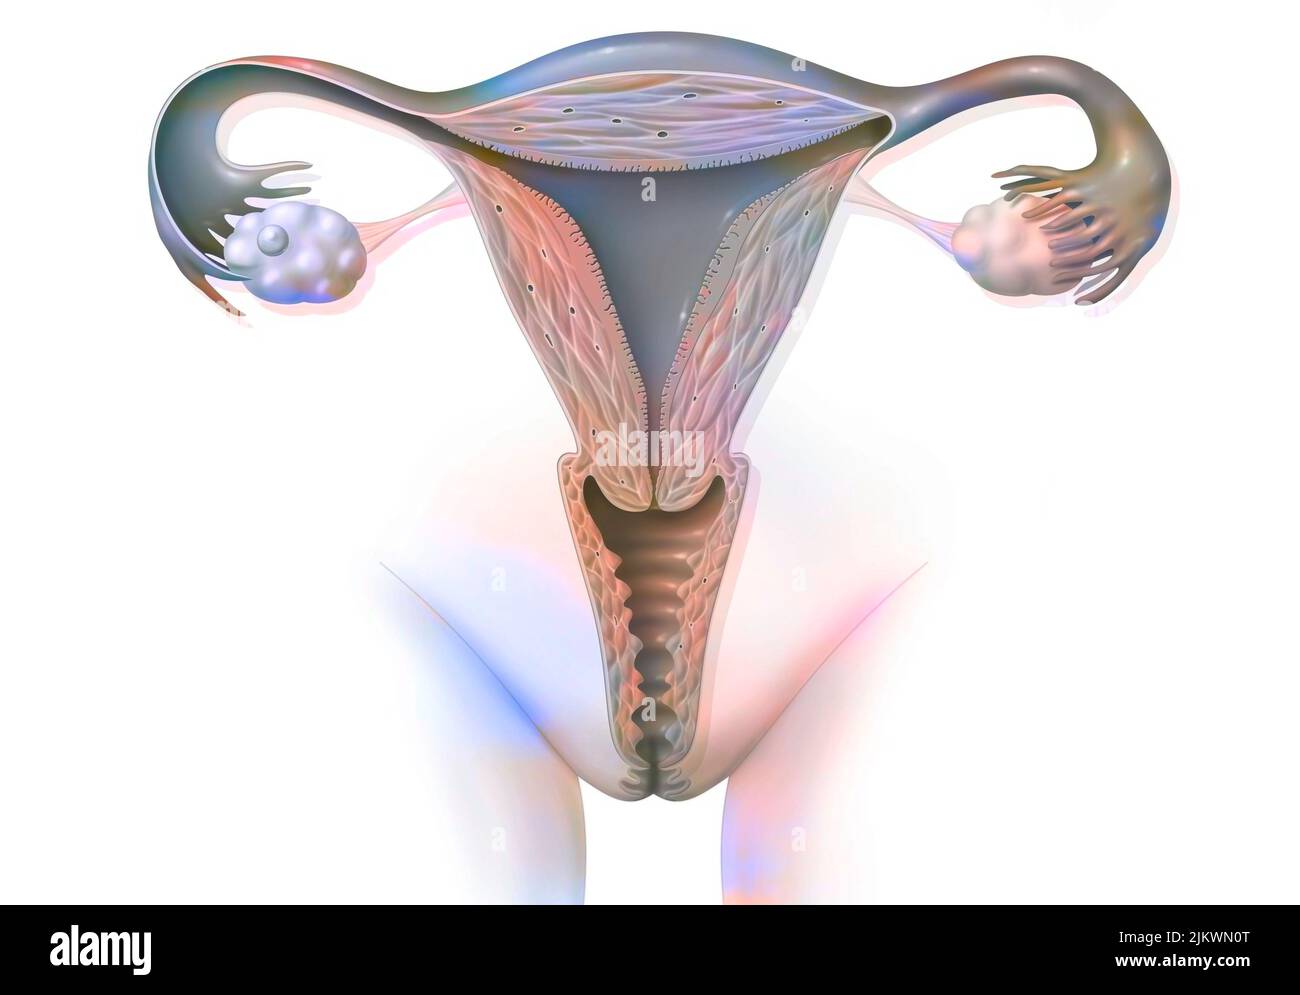 Organes génitaux féminins, avec un follicule ovarien représenté dans l'ovaire. Banque D'Images